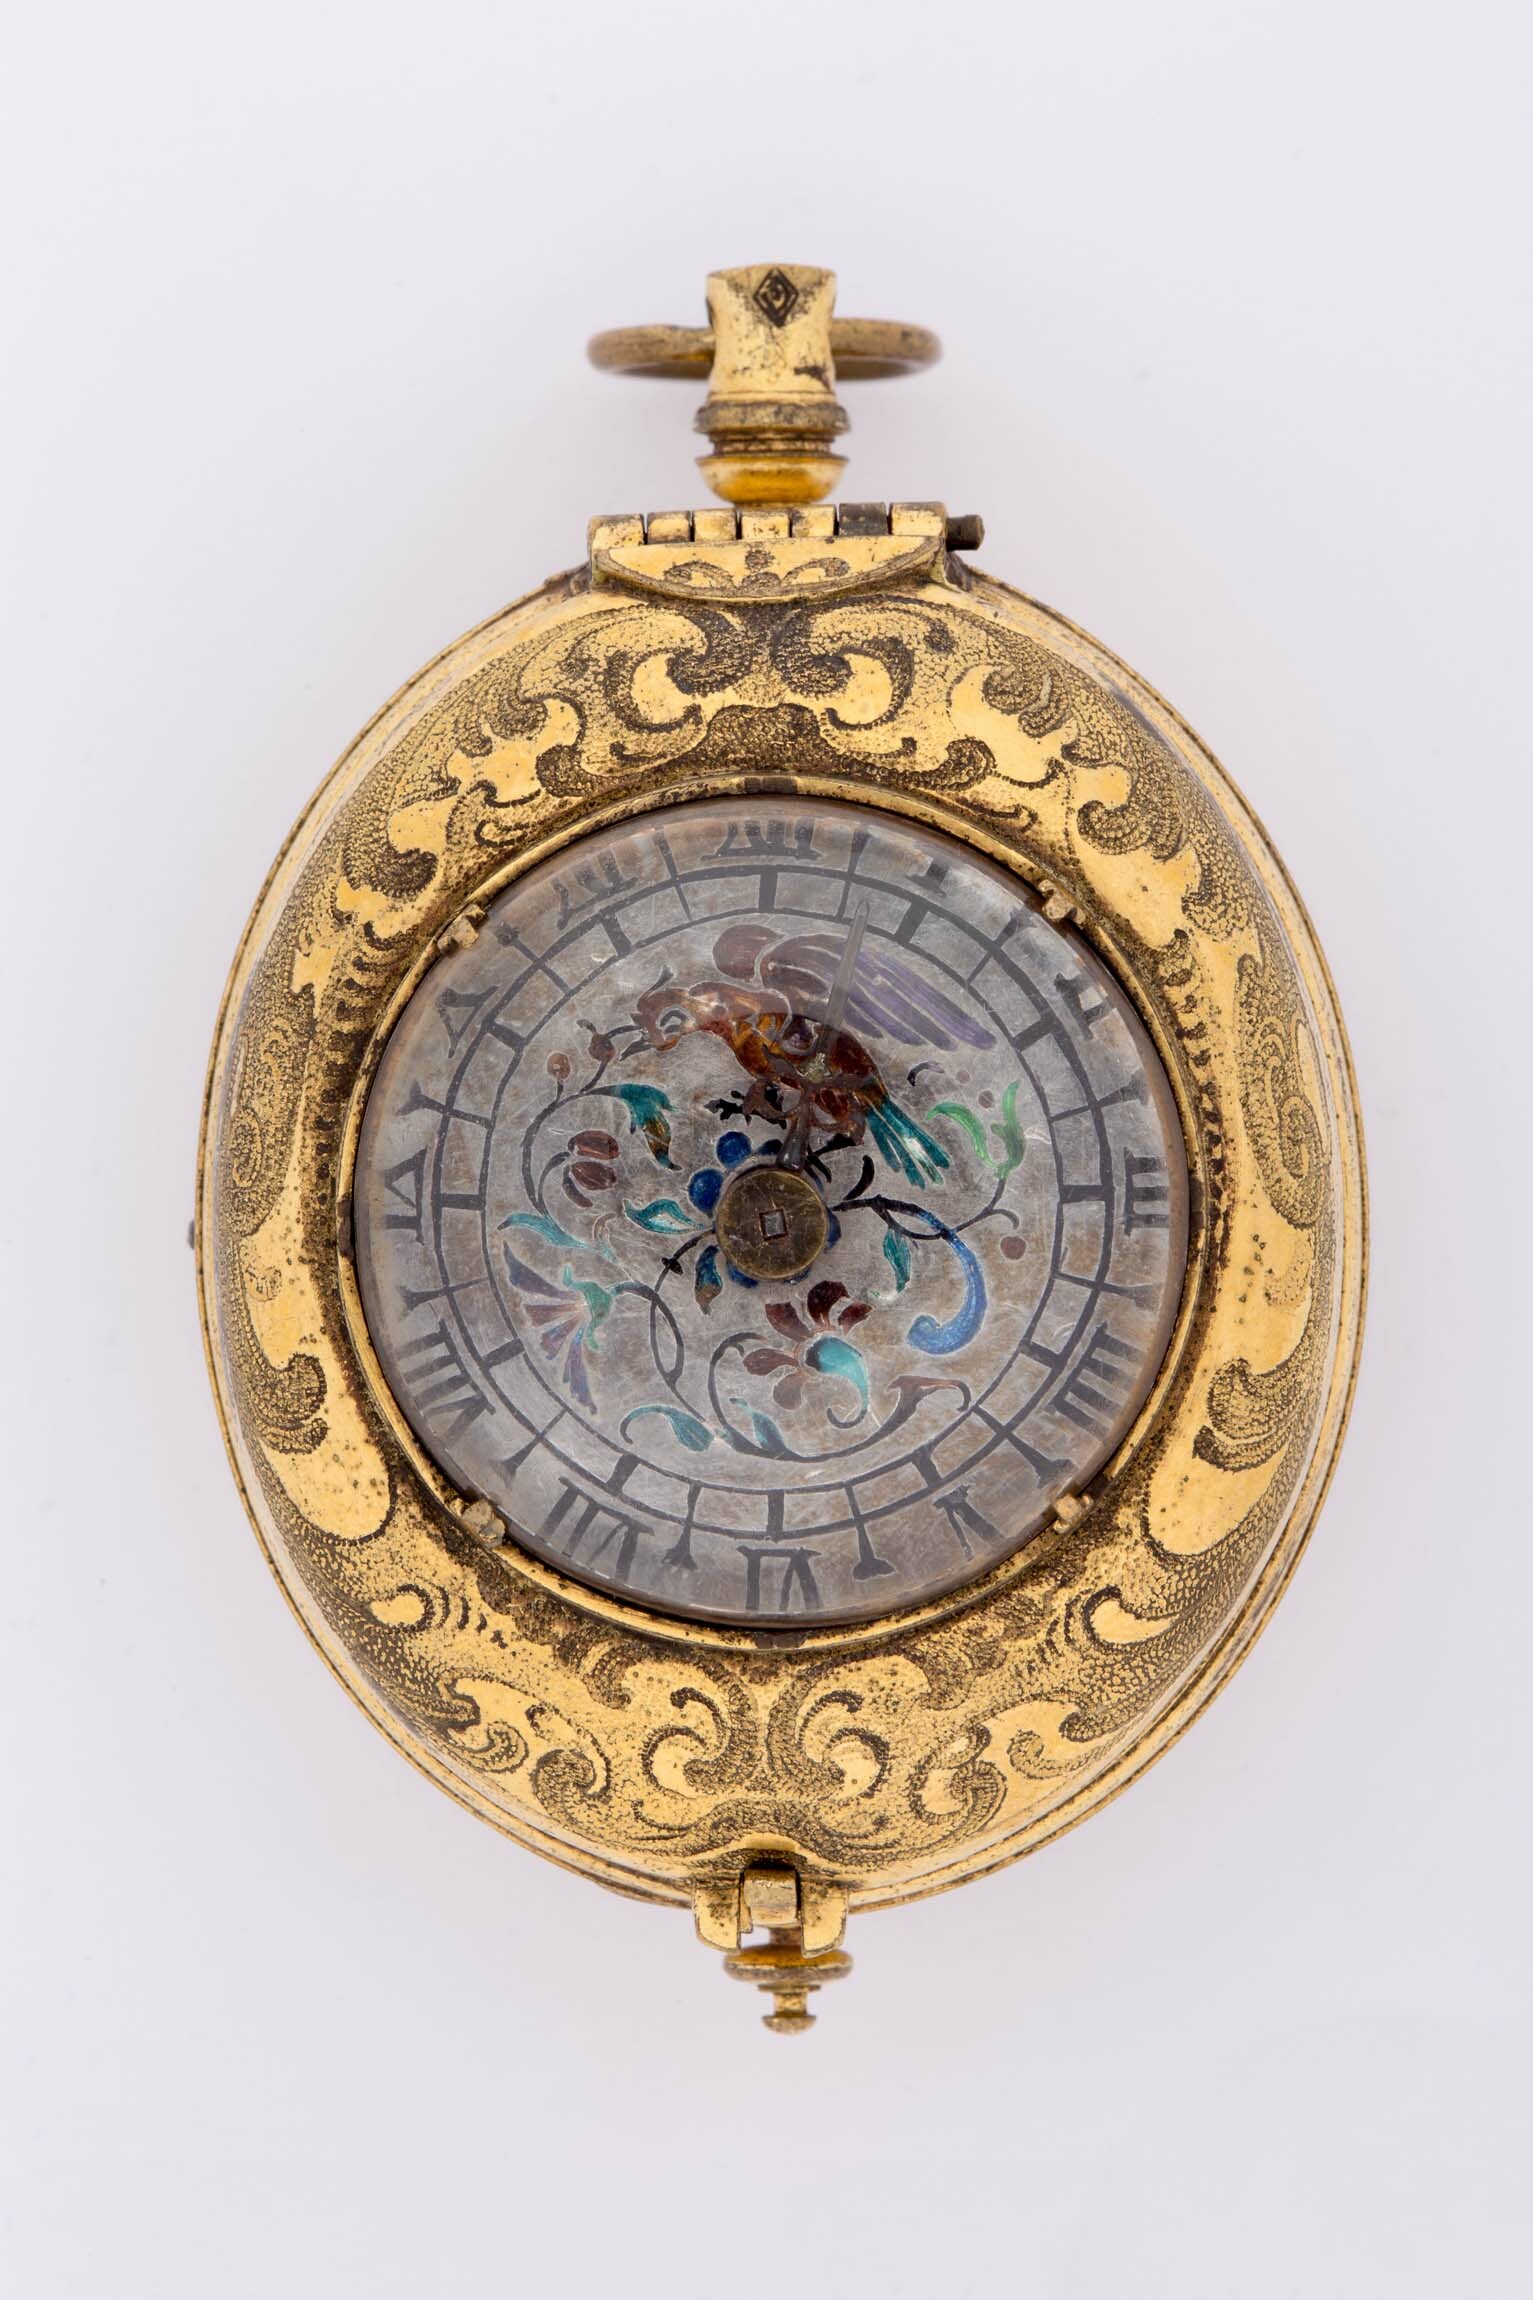 Halsuhr mit Schlagwerk, um 1625 (Deutsches Uhrenmuseum CC BY-SA)